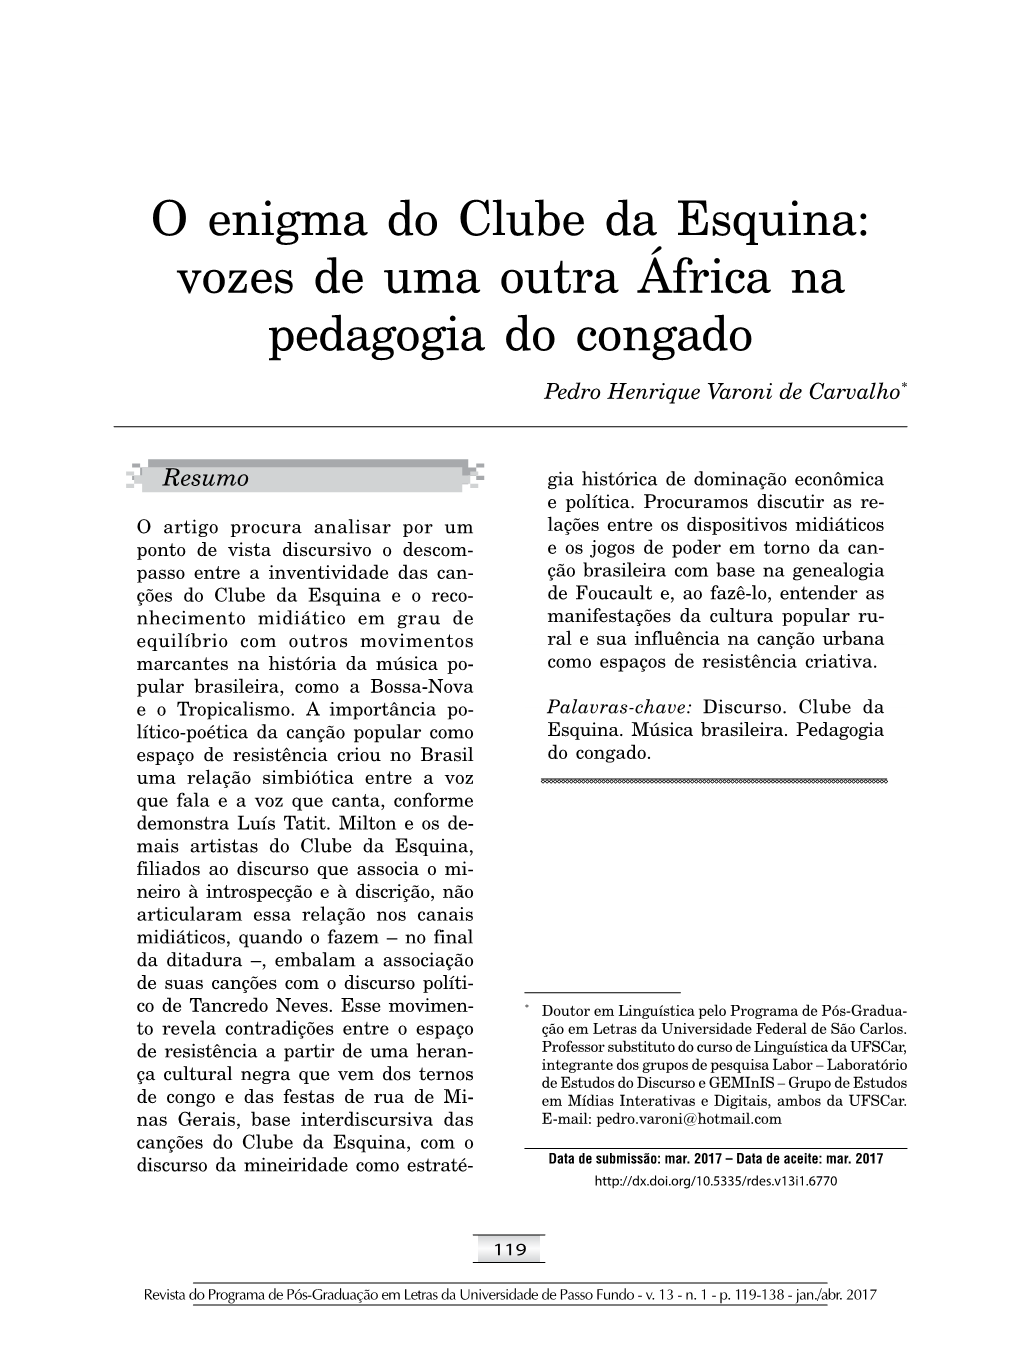 O Enigma Do Clube Da Esquina: Vozes De Uma Outra África Na Pedagogia Do Congado Pedro Henrique Varoni De Carvalho*